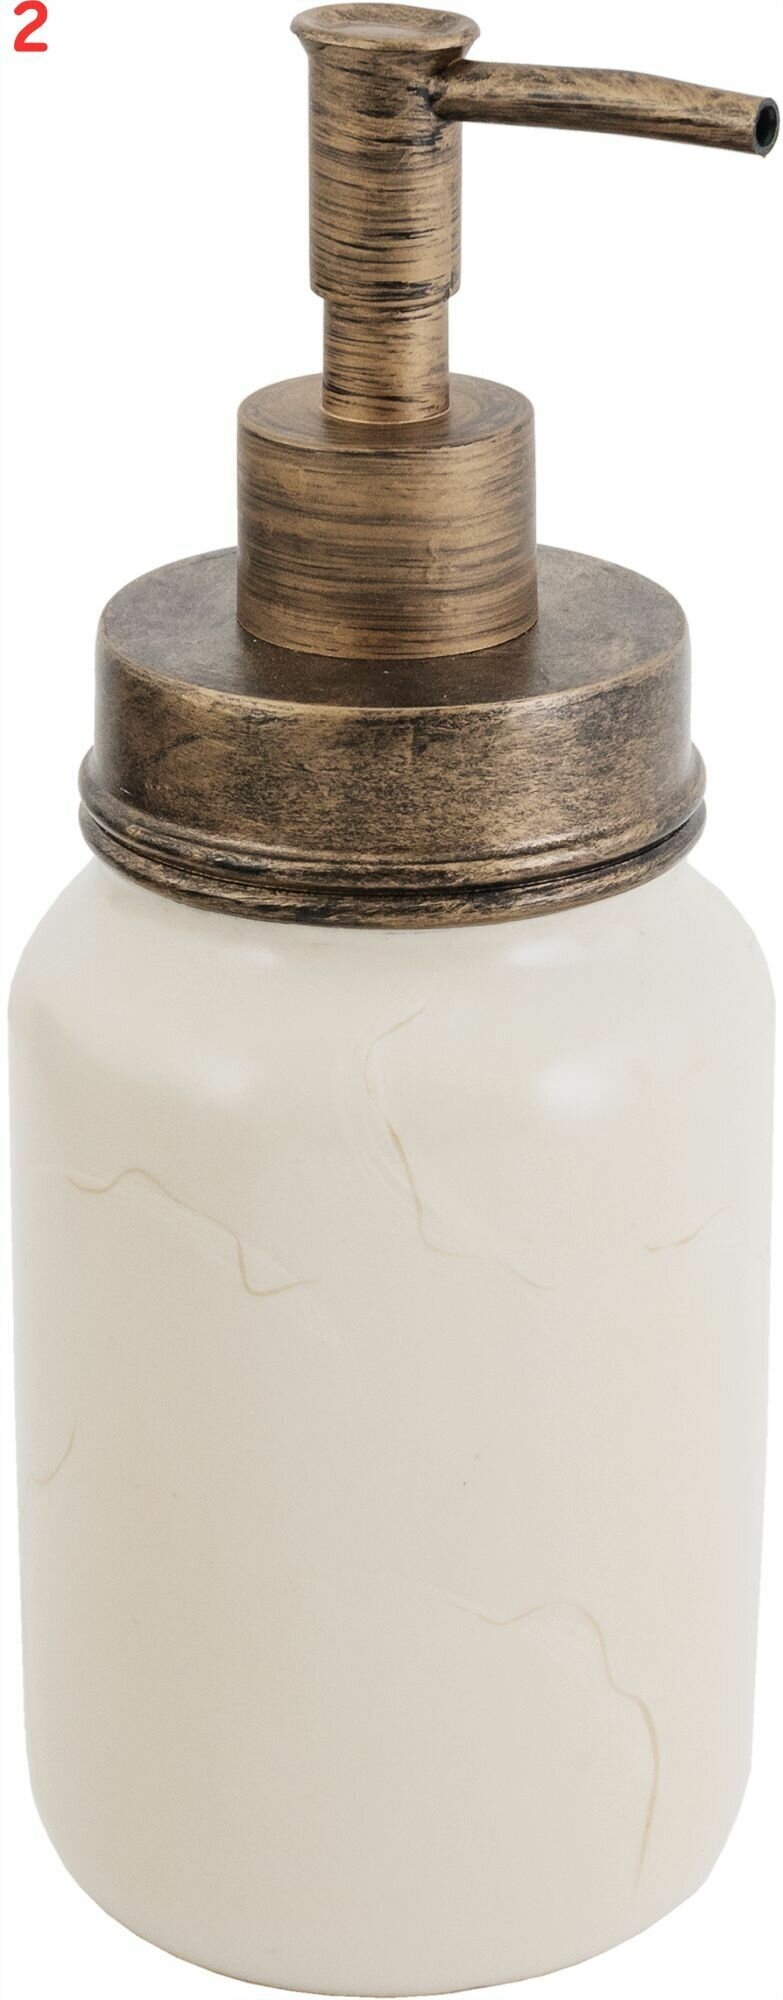 Дозатор для жидкого мыла Swensa Rome цвет бежевый (2 шт.)